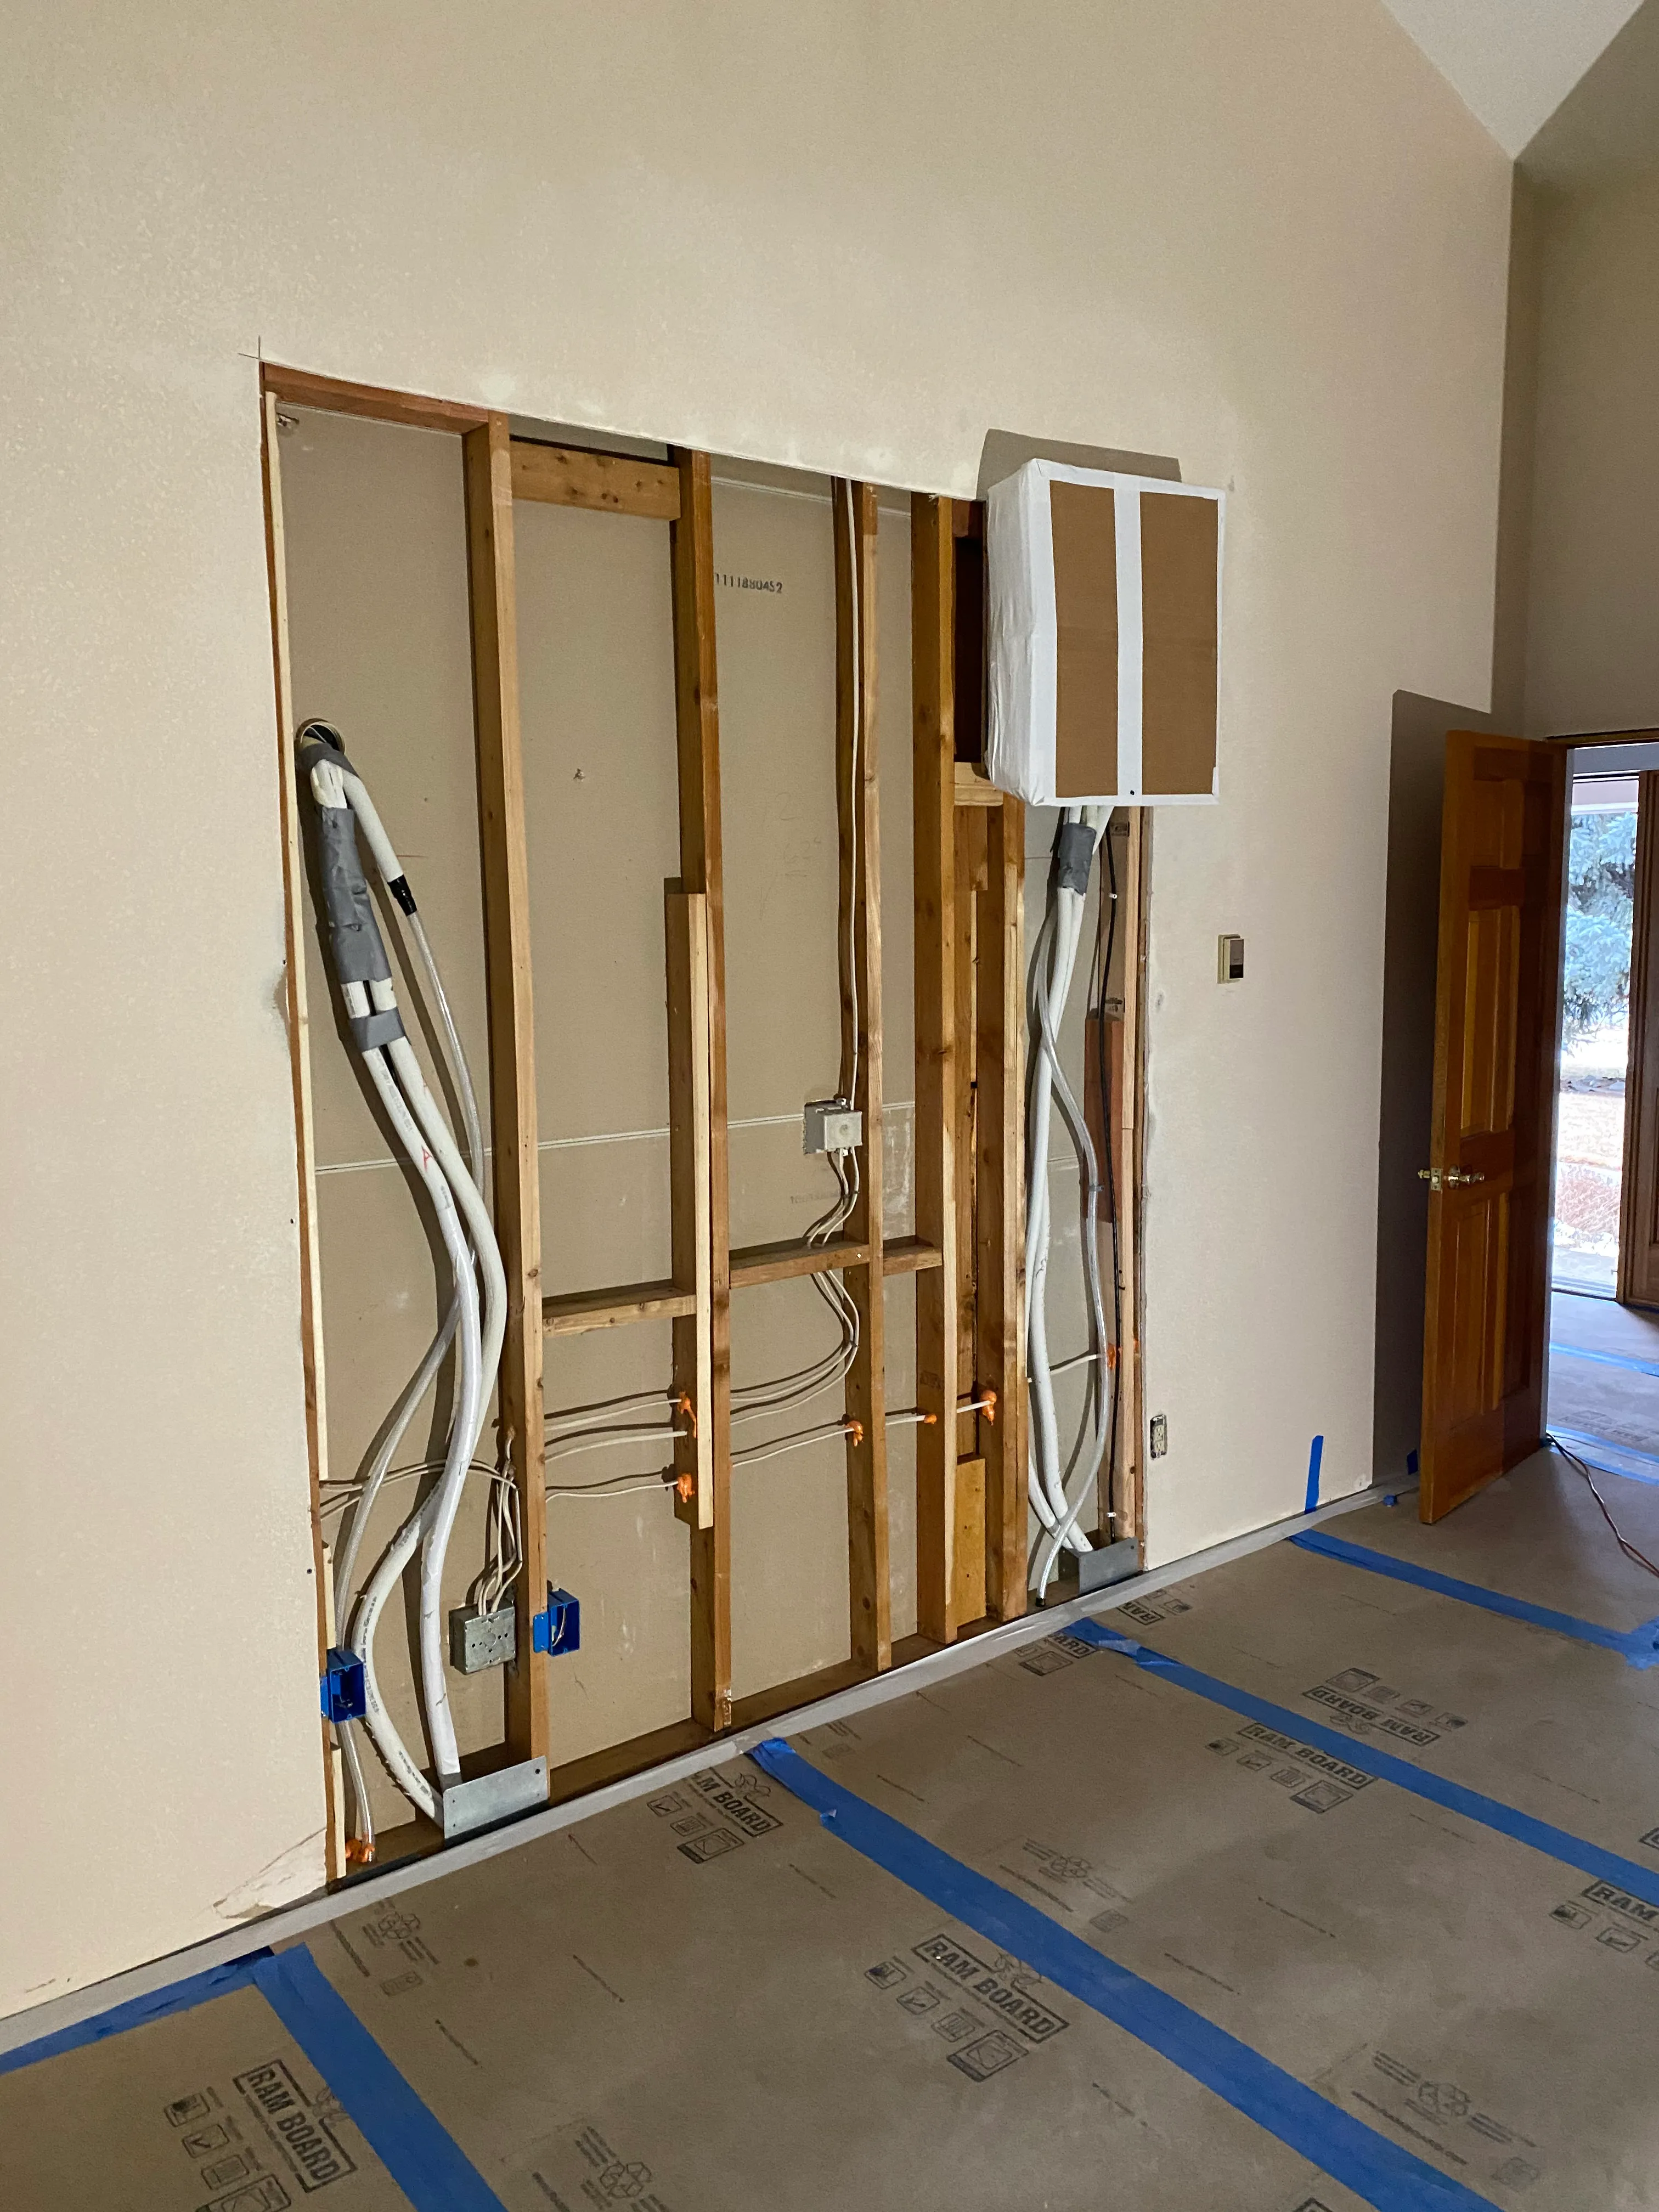 Drywall Installation for ARK Finishing LLC in Denver, CO